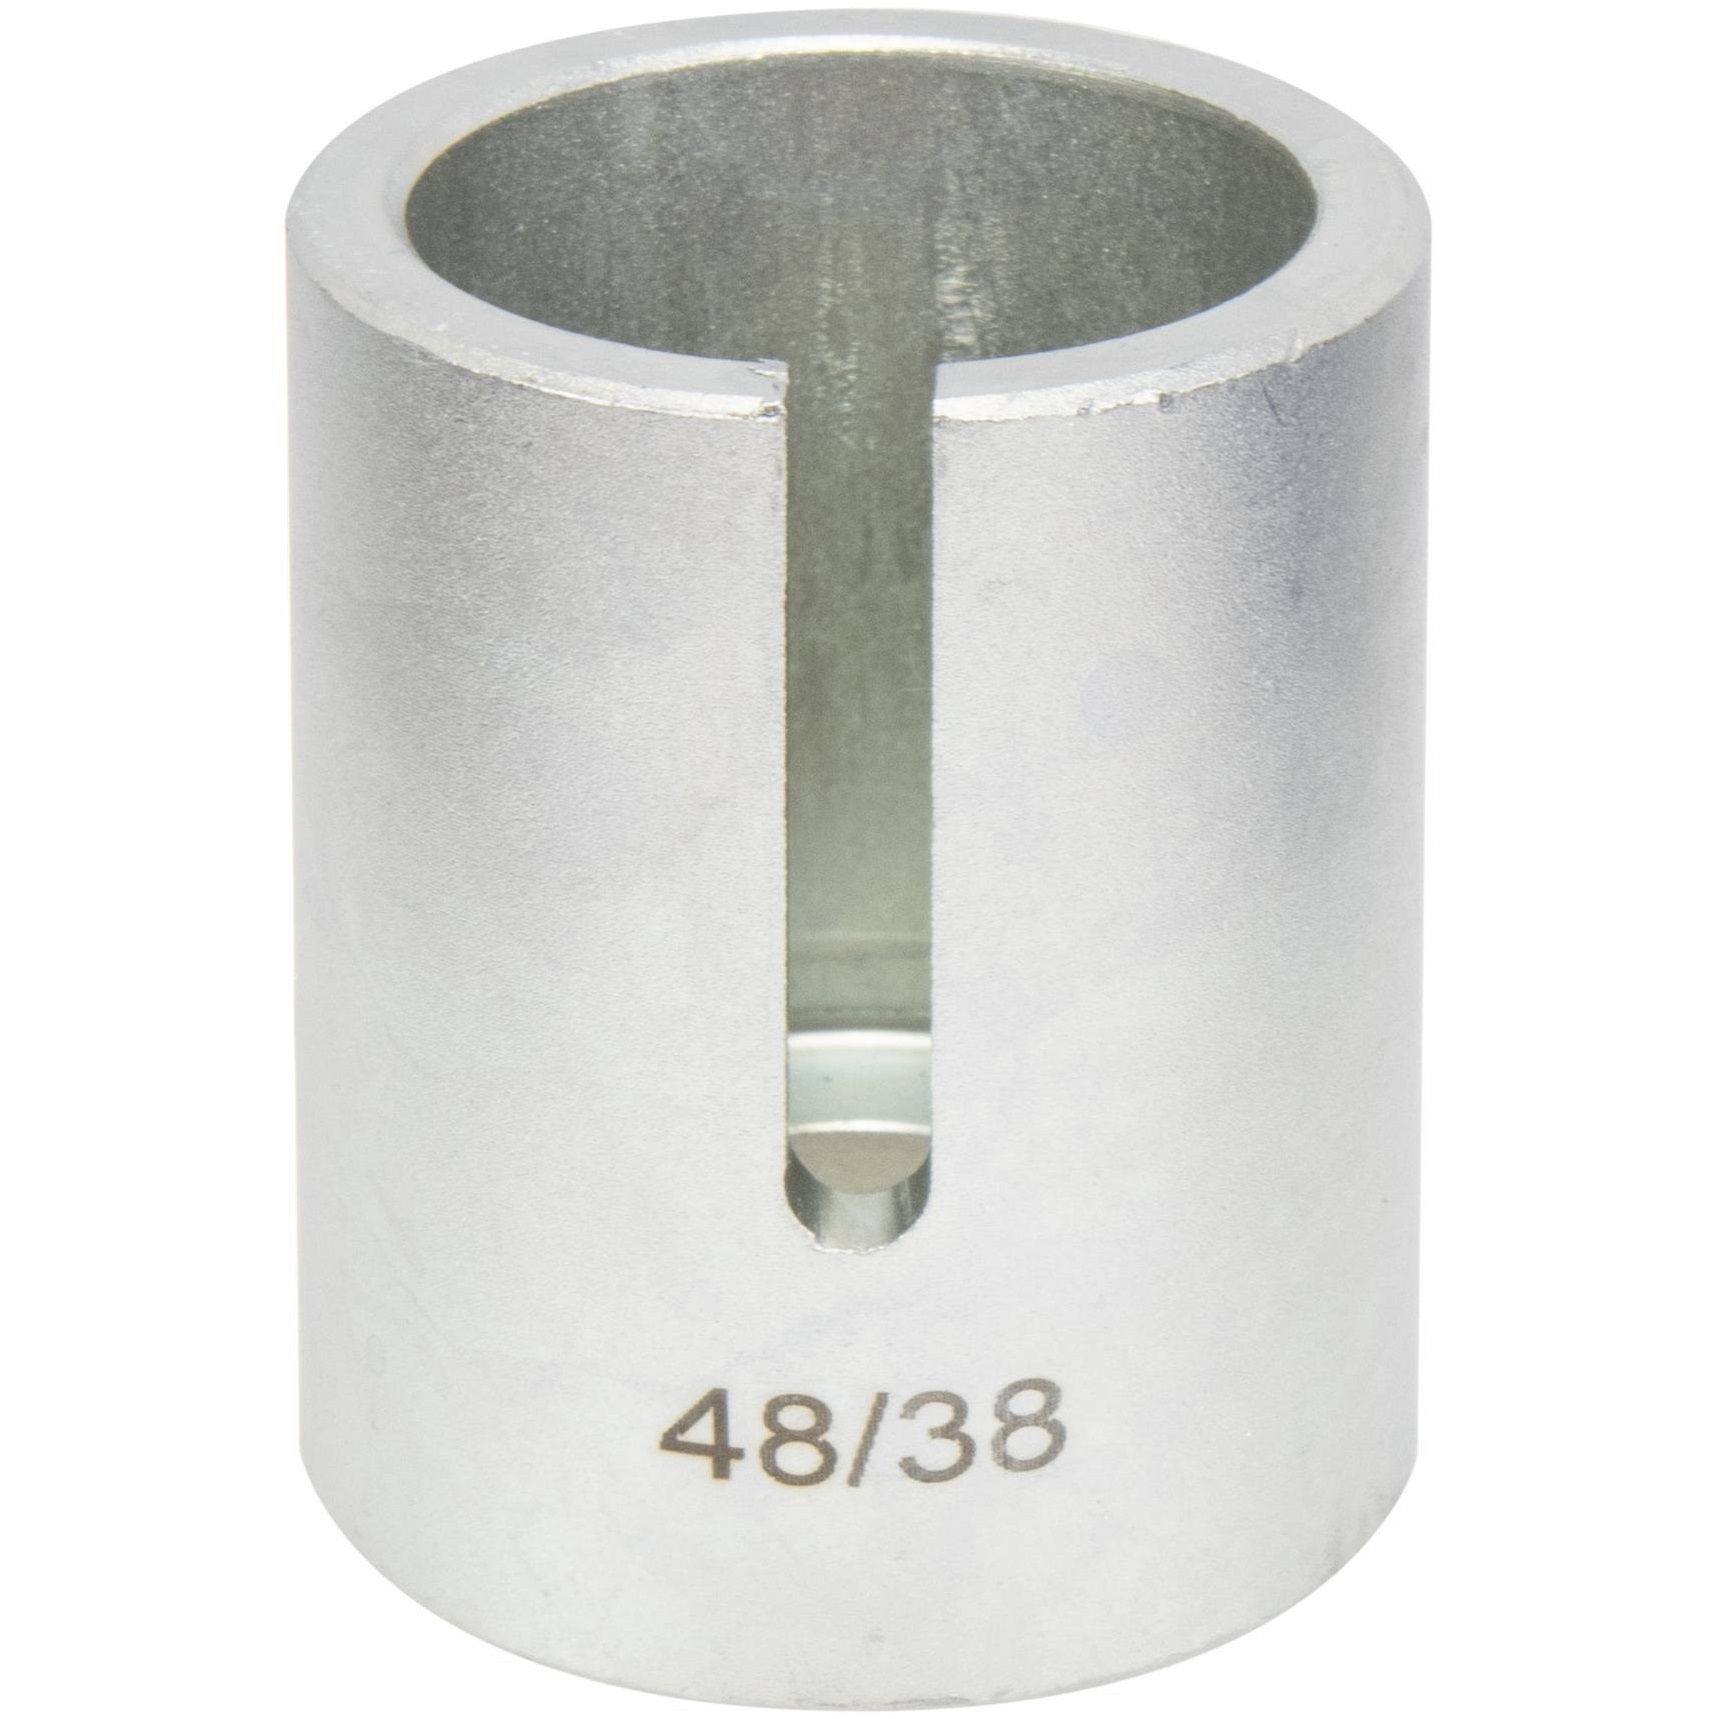 Puzdro tlačné Ø 38 / 48 mm, pre sadu na ložiská REPTOOLS 117908, STAHLMAXX 117908-38/48